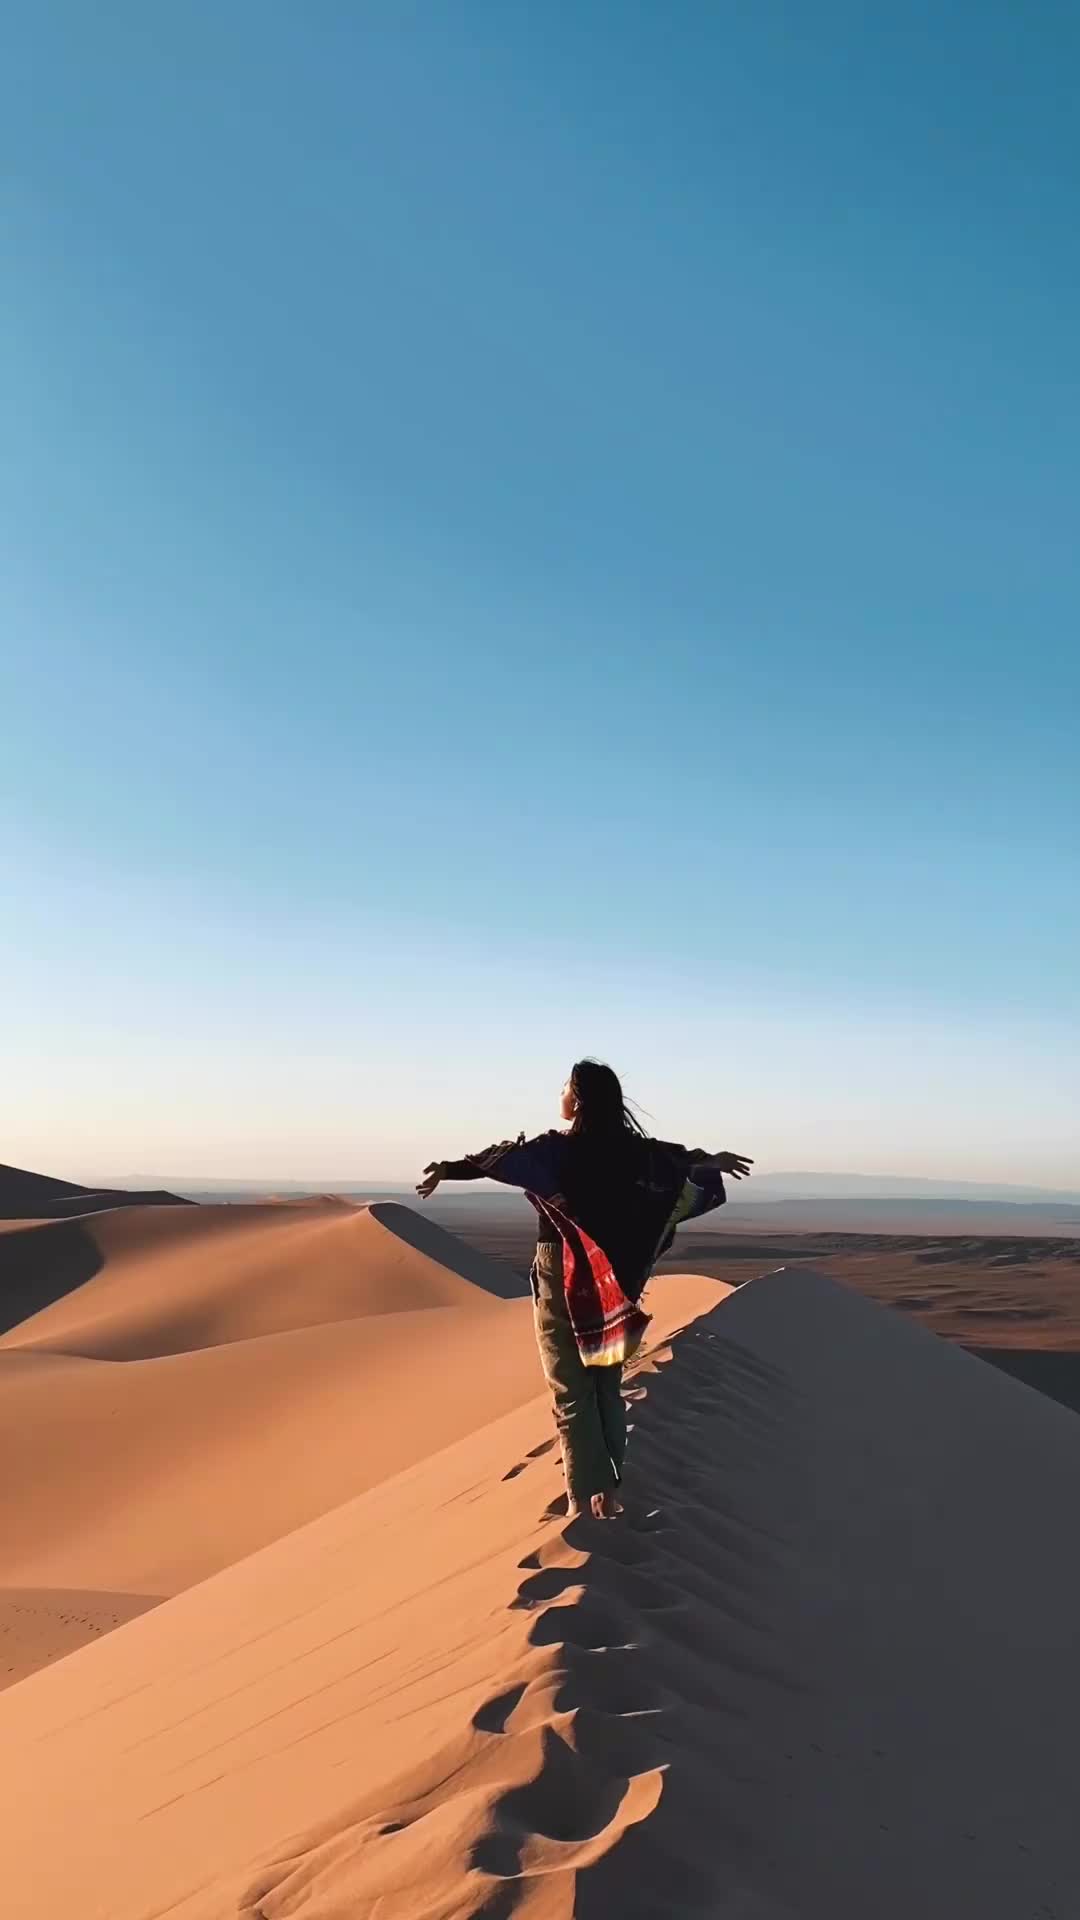 꿈에 그리던 사막을 처음으로 올라가본 날🐪
너무 힘들었지만 그만큼 아름다운 풍경이 맞이해줬다

📍몽골 고비사막